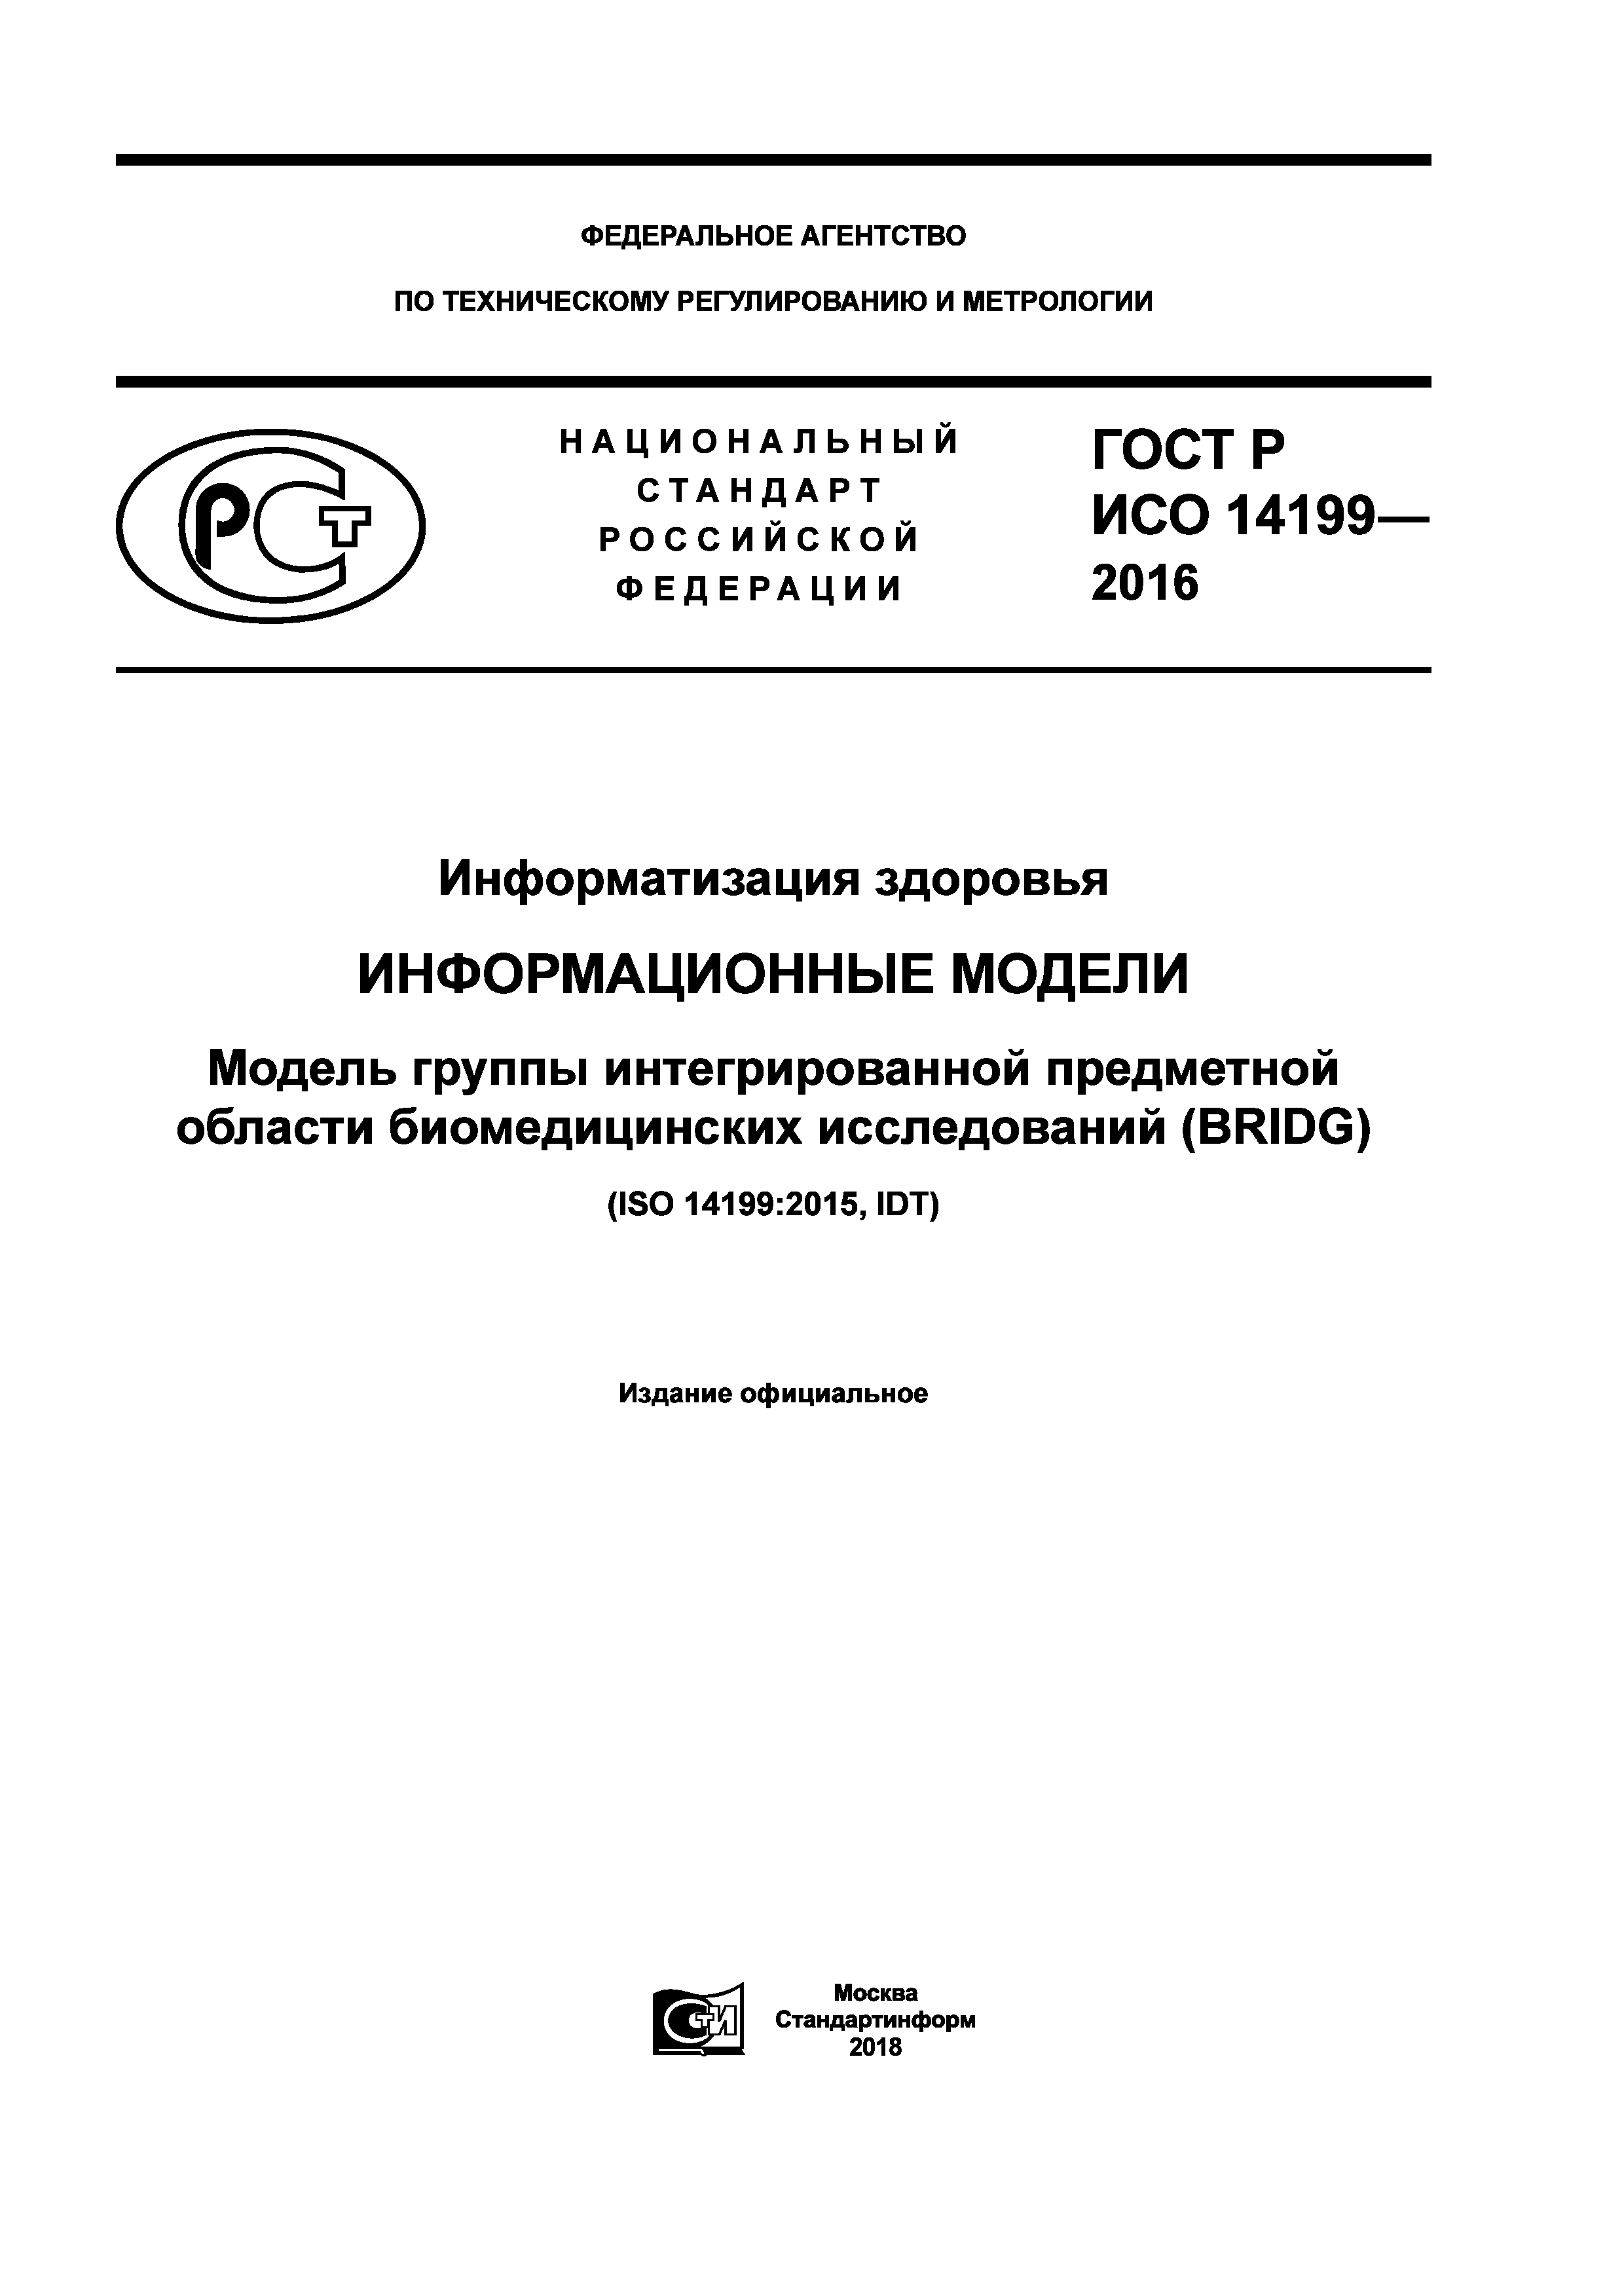 ГОСТ Р ИСО 14199-2016